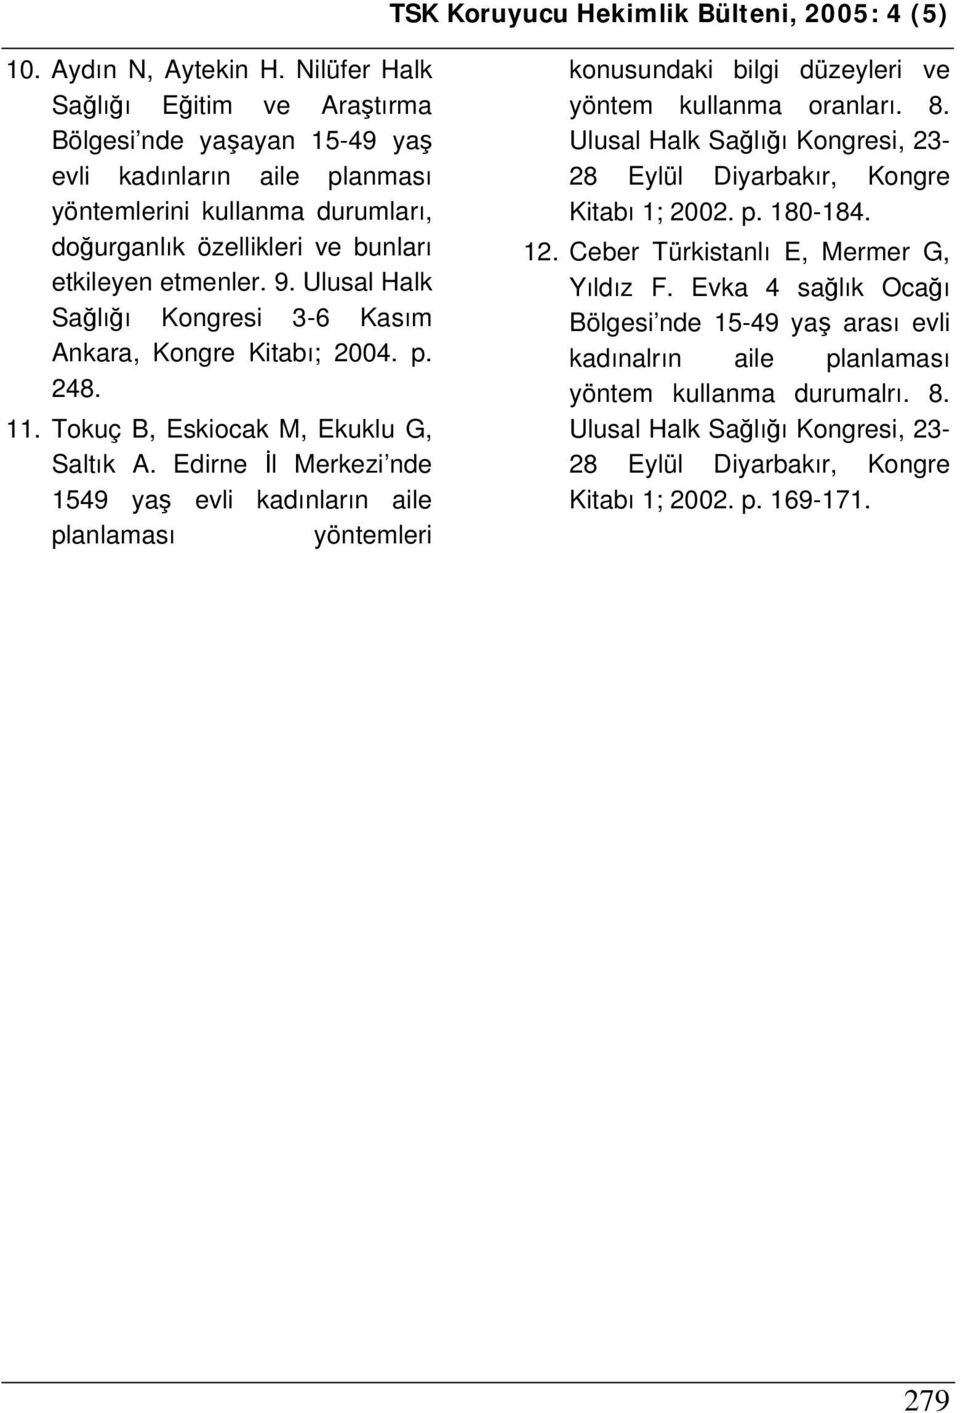 Ulusal Halk Sağlığı Kongresi 3-6 Kasım Ankara, Kongre Kitabı; 2004. p. 248. 11. Tokuç B, Eskiocak M, Ekuklu G, Saltık A.